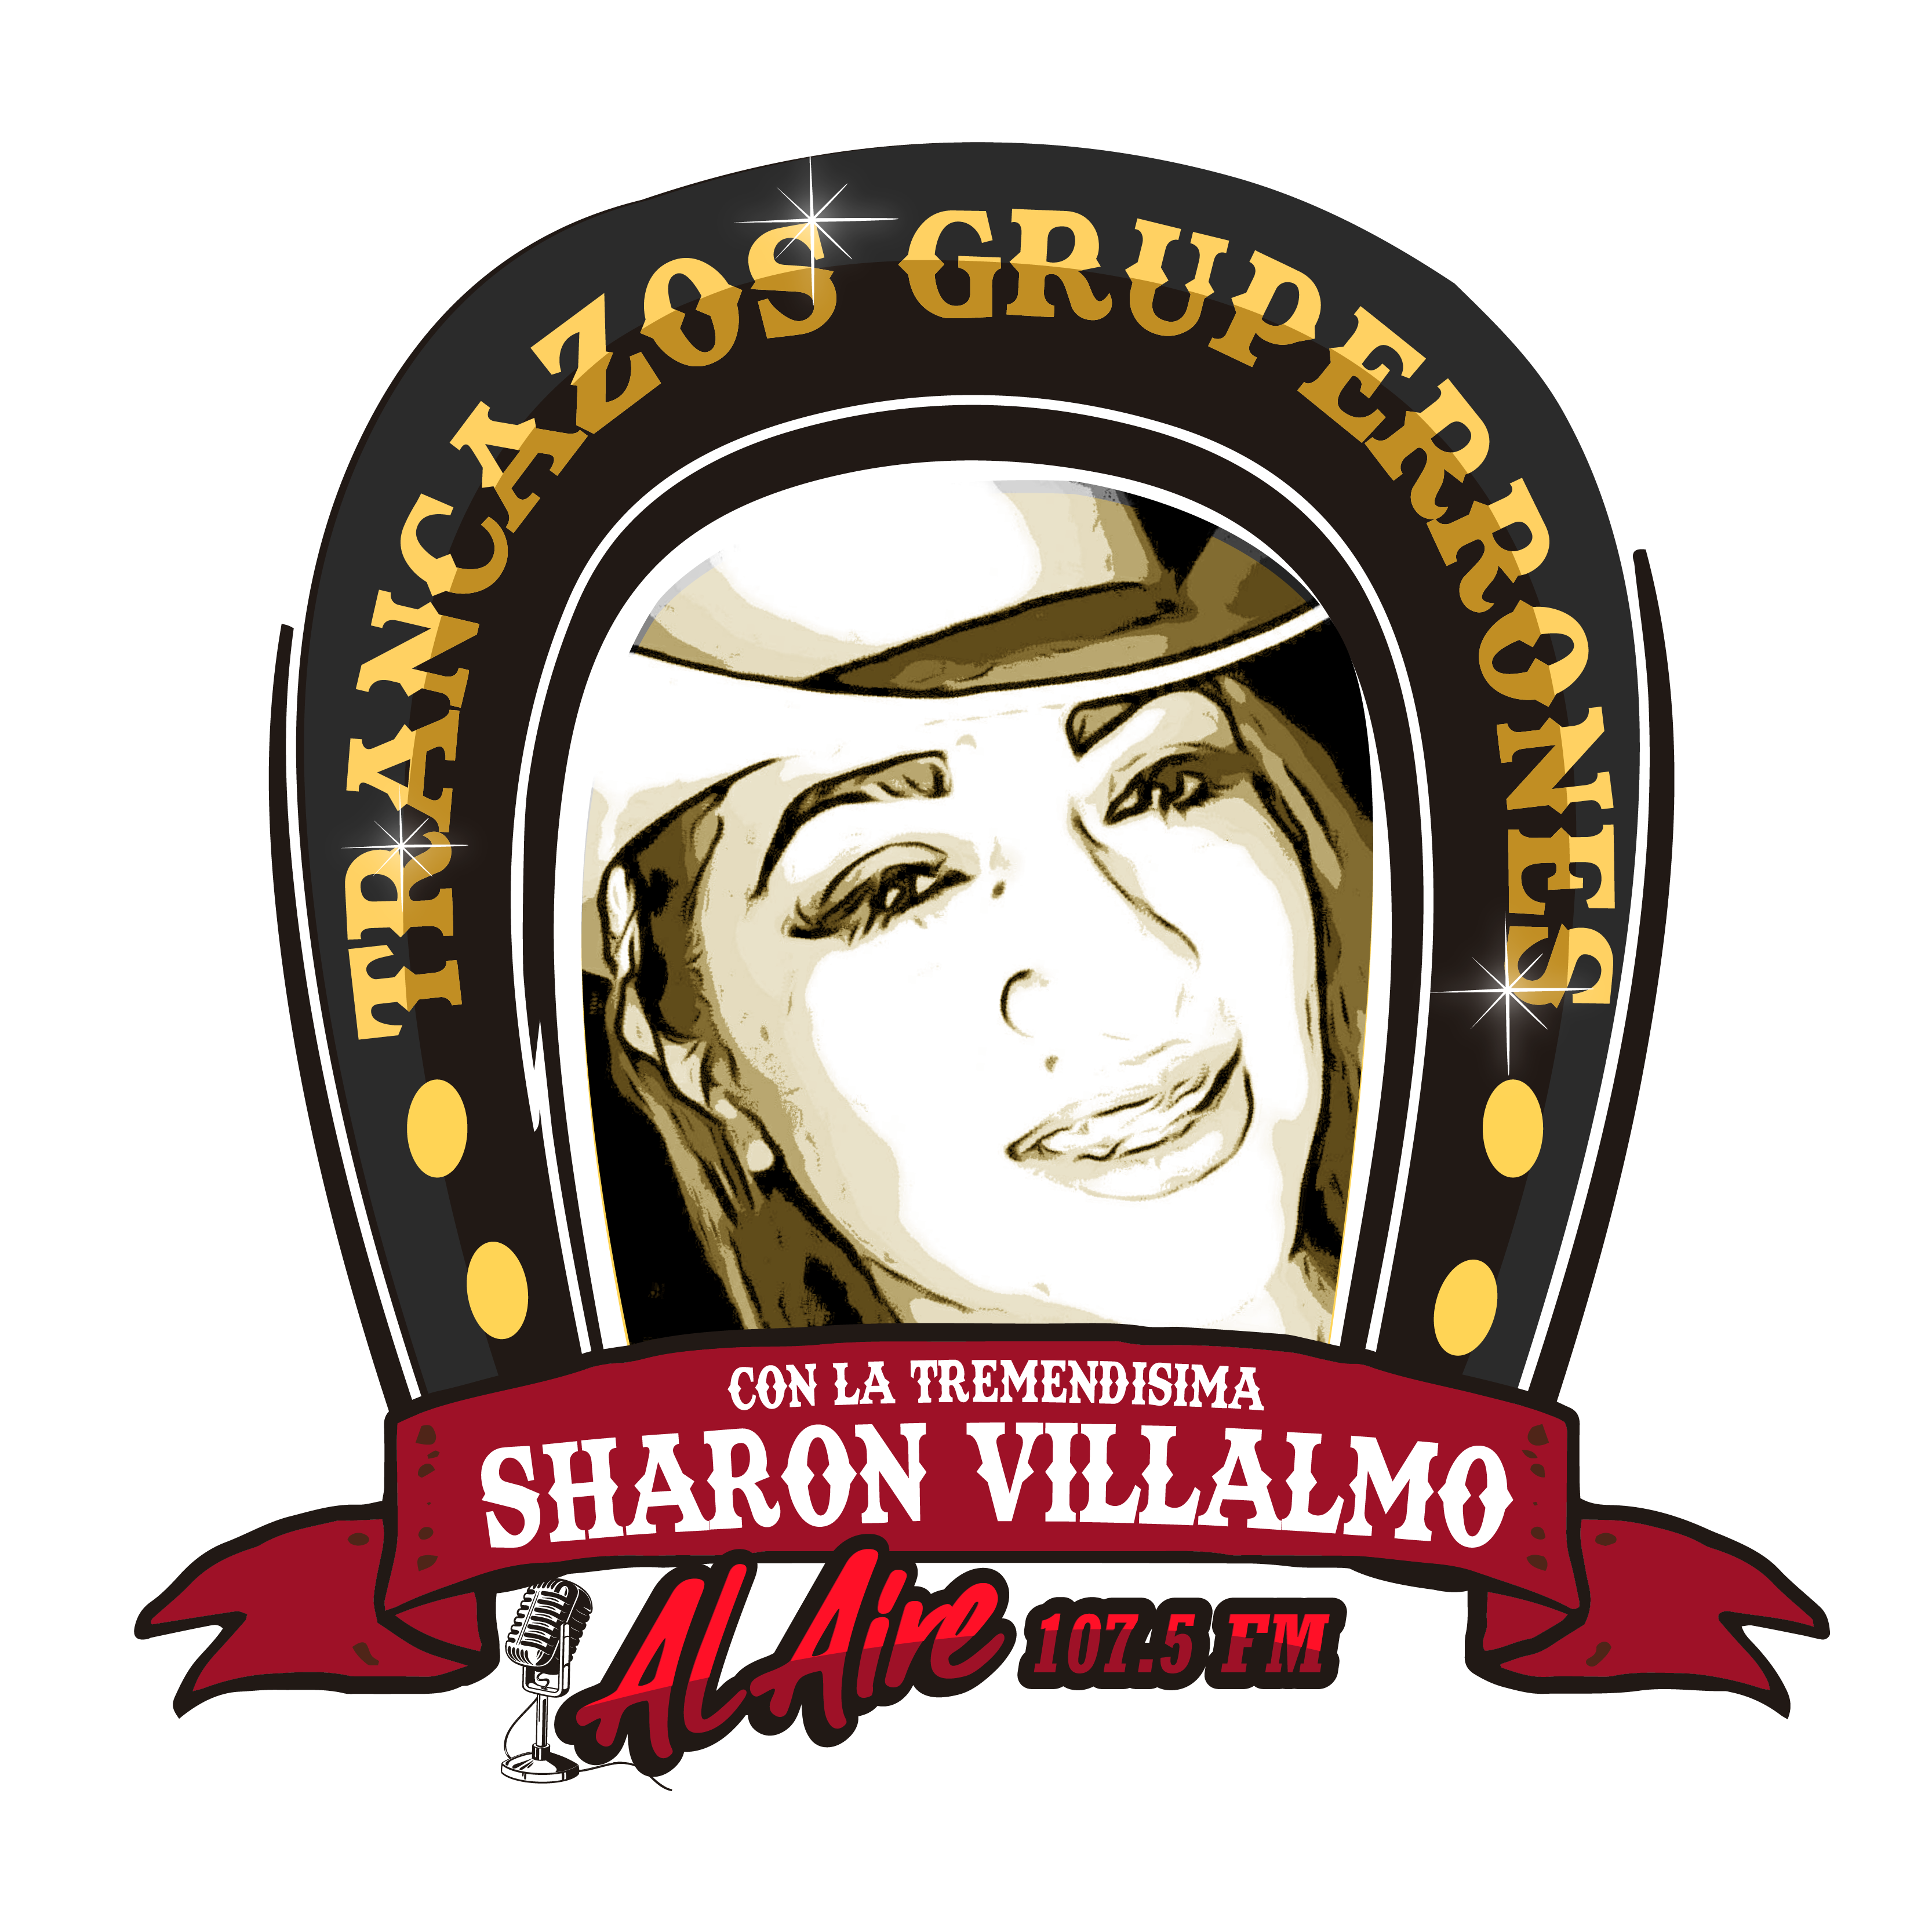 Trancazos Gruperrones con Sharon Villalmo